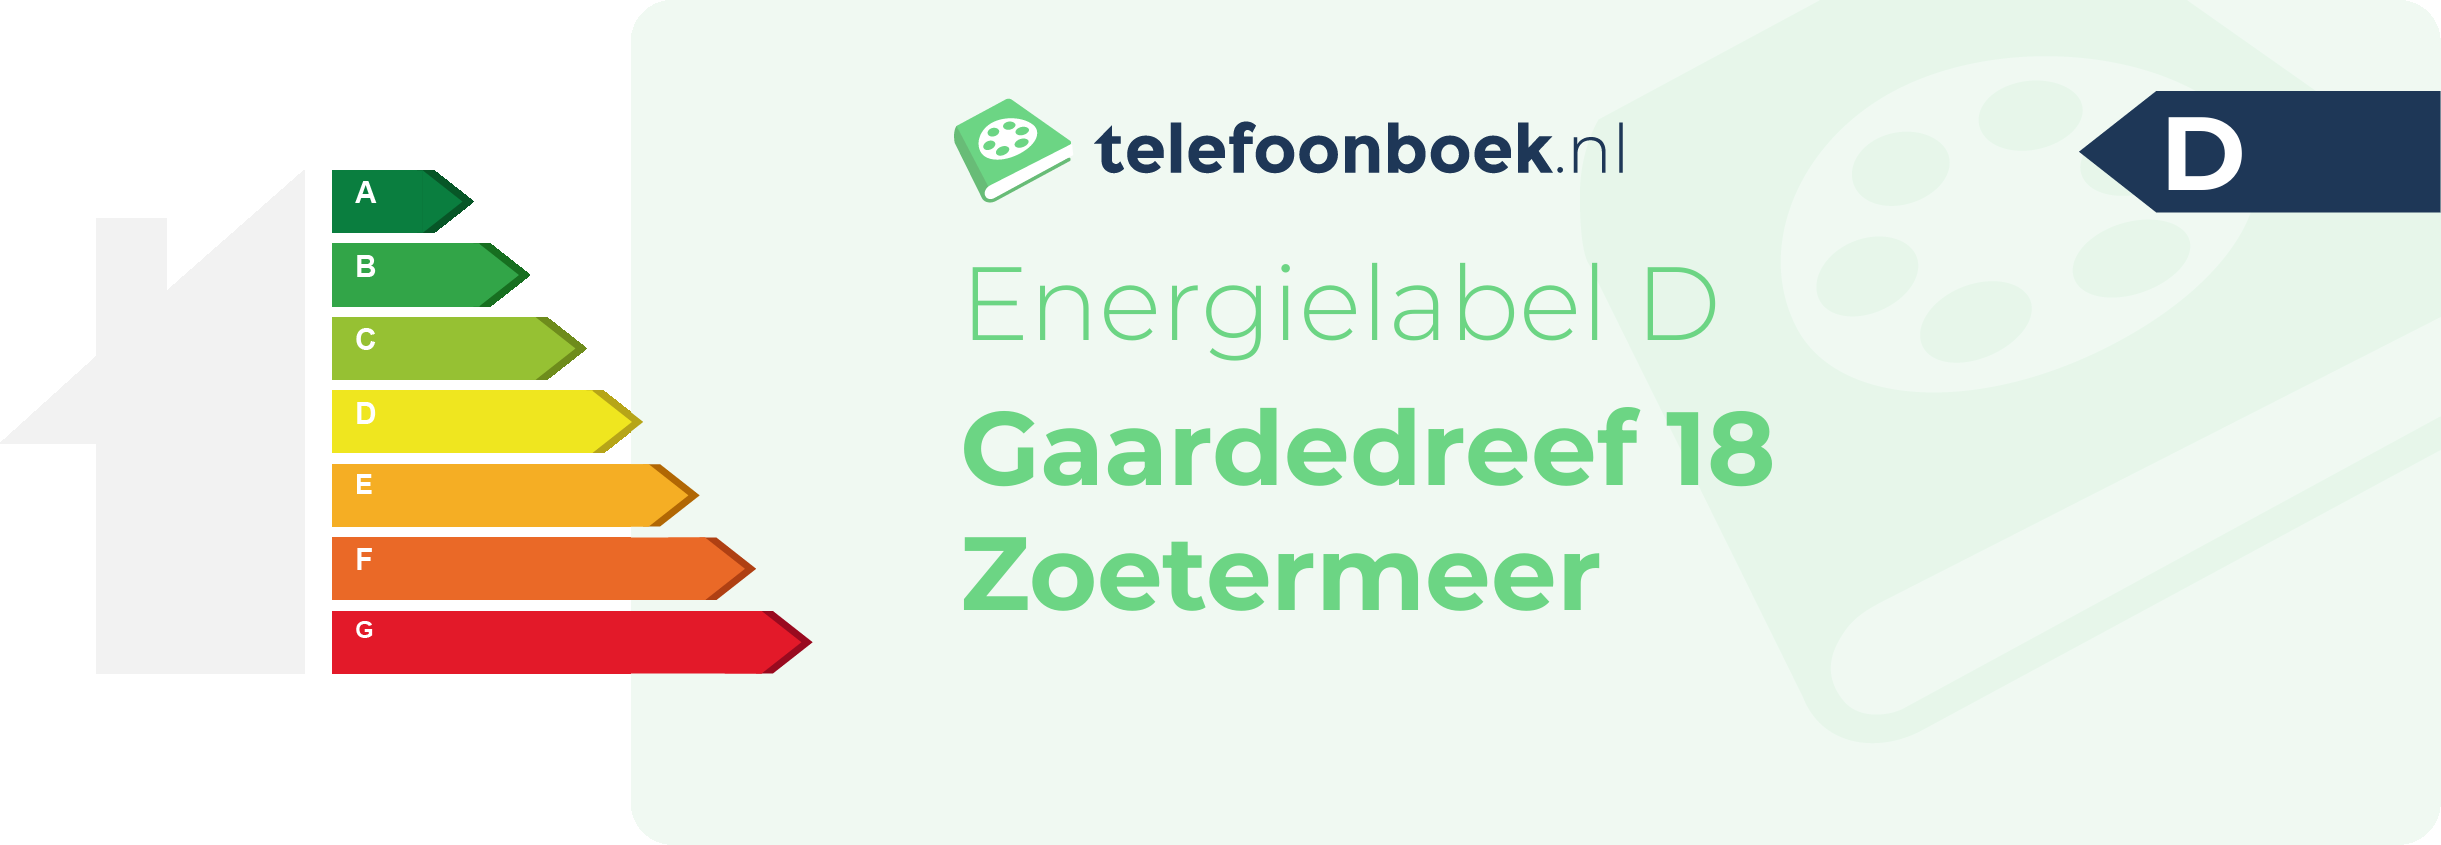 Energielabel Gaardedreef 18 Zoetermeer